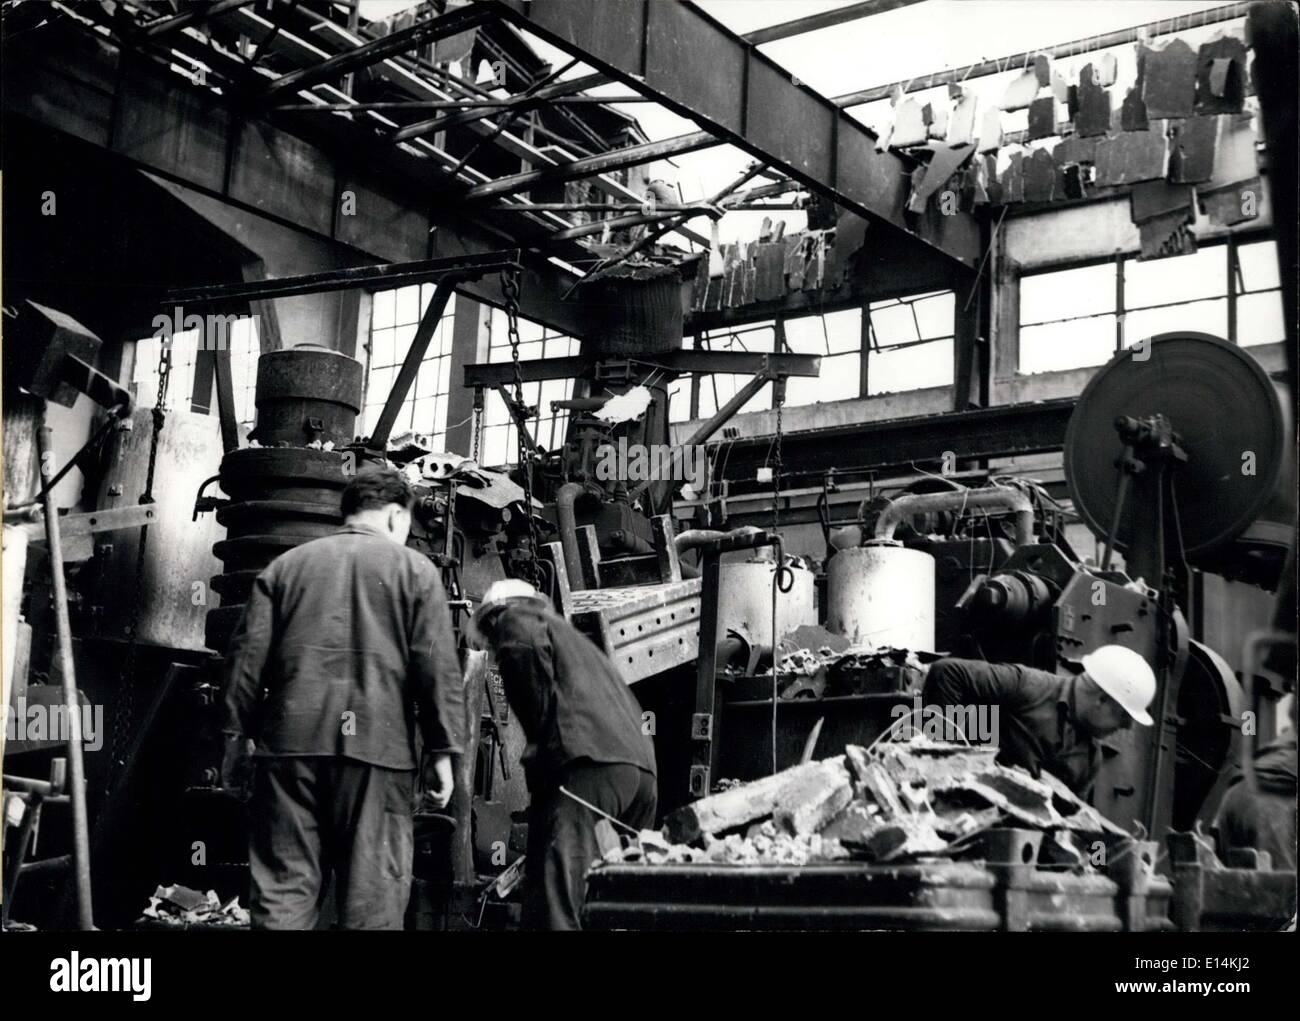 Abril 05, 2012 - 16 hombres fueron muertos por una explosión.: hoy 9..3.1963 16 hombres fueron muertos y 36 hombres tuvieron malas heridas cuando una gran explosión ocurrió en una herrería-fábrica de Belecke en Arnsberg en Alemania. Nuestra foto muestra una fábrica-hall tras la gran explosin. Foto de stock